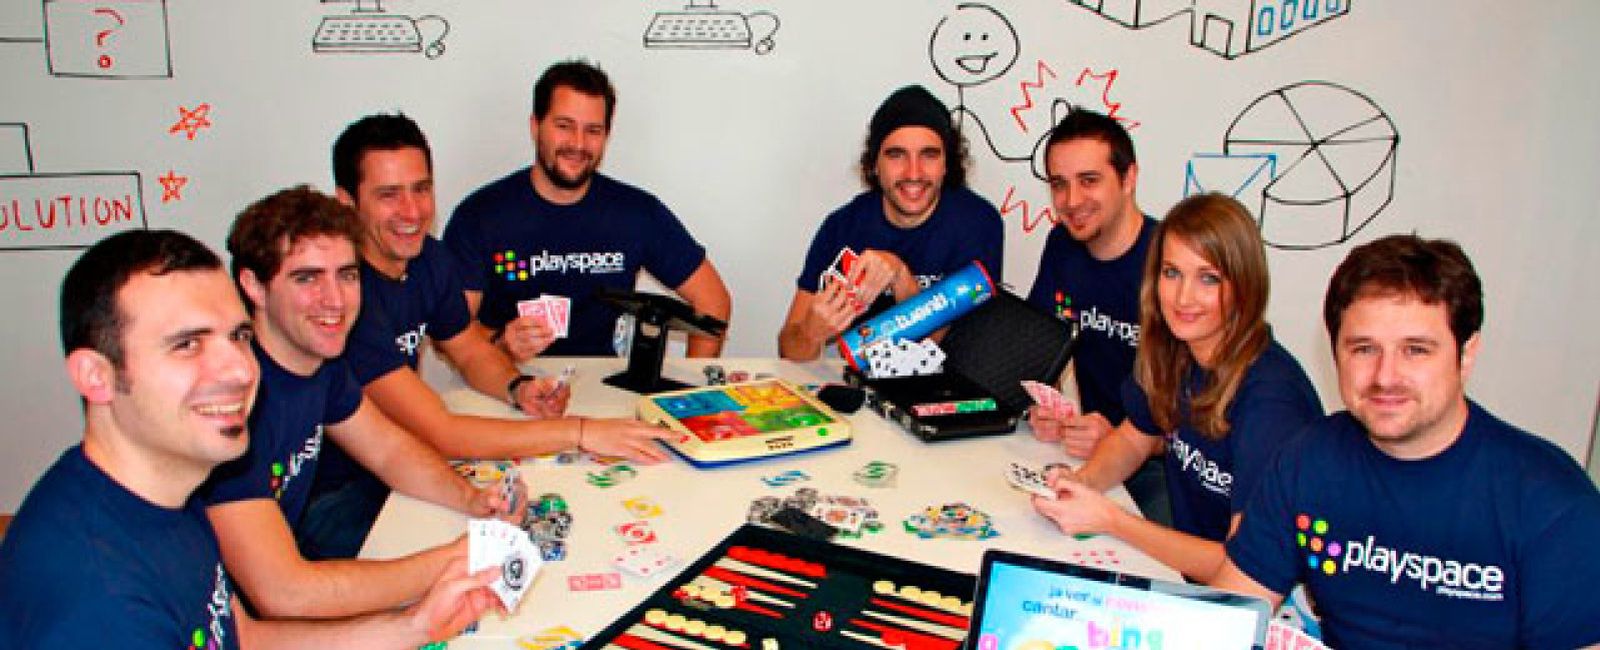 Foto: Playspace ficha a una ex-ejecutiva de Yahoo! para dar el salto a Latinoamérica